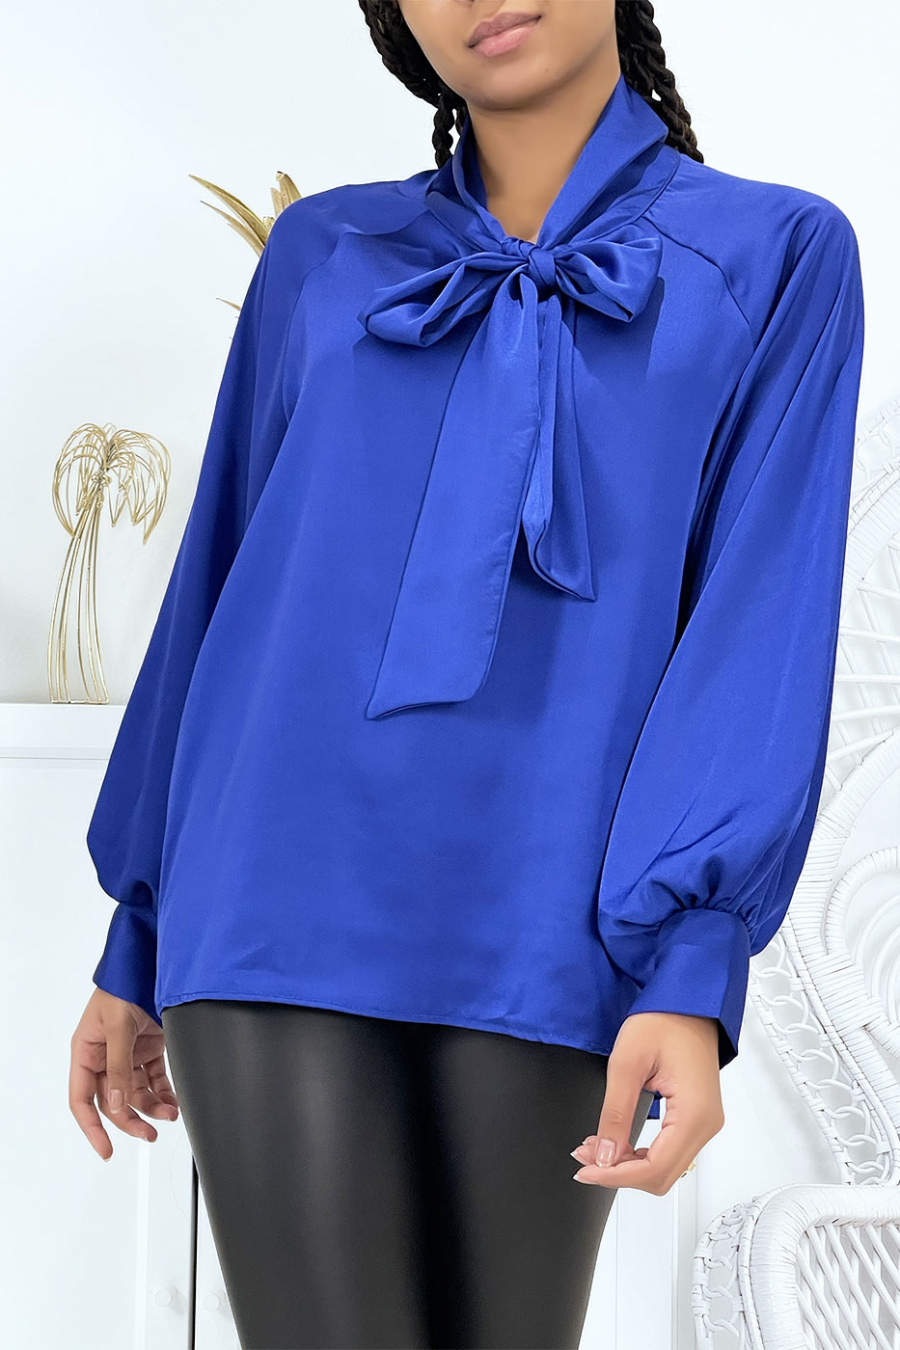 Women's royal blue satin blouse